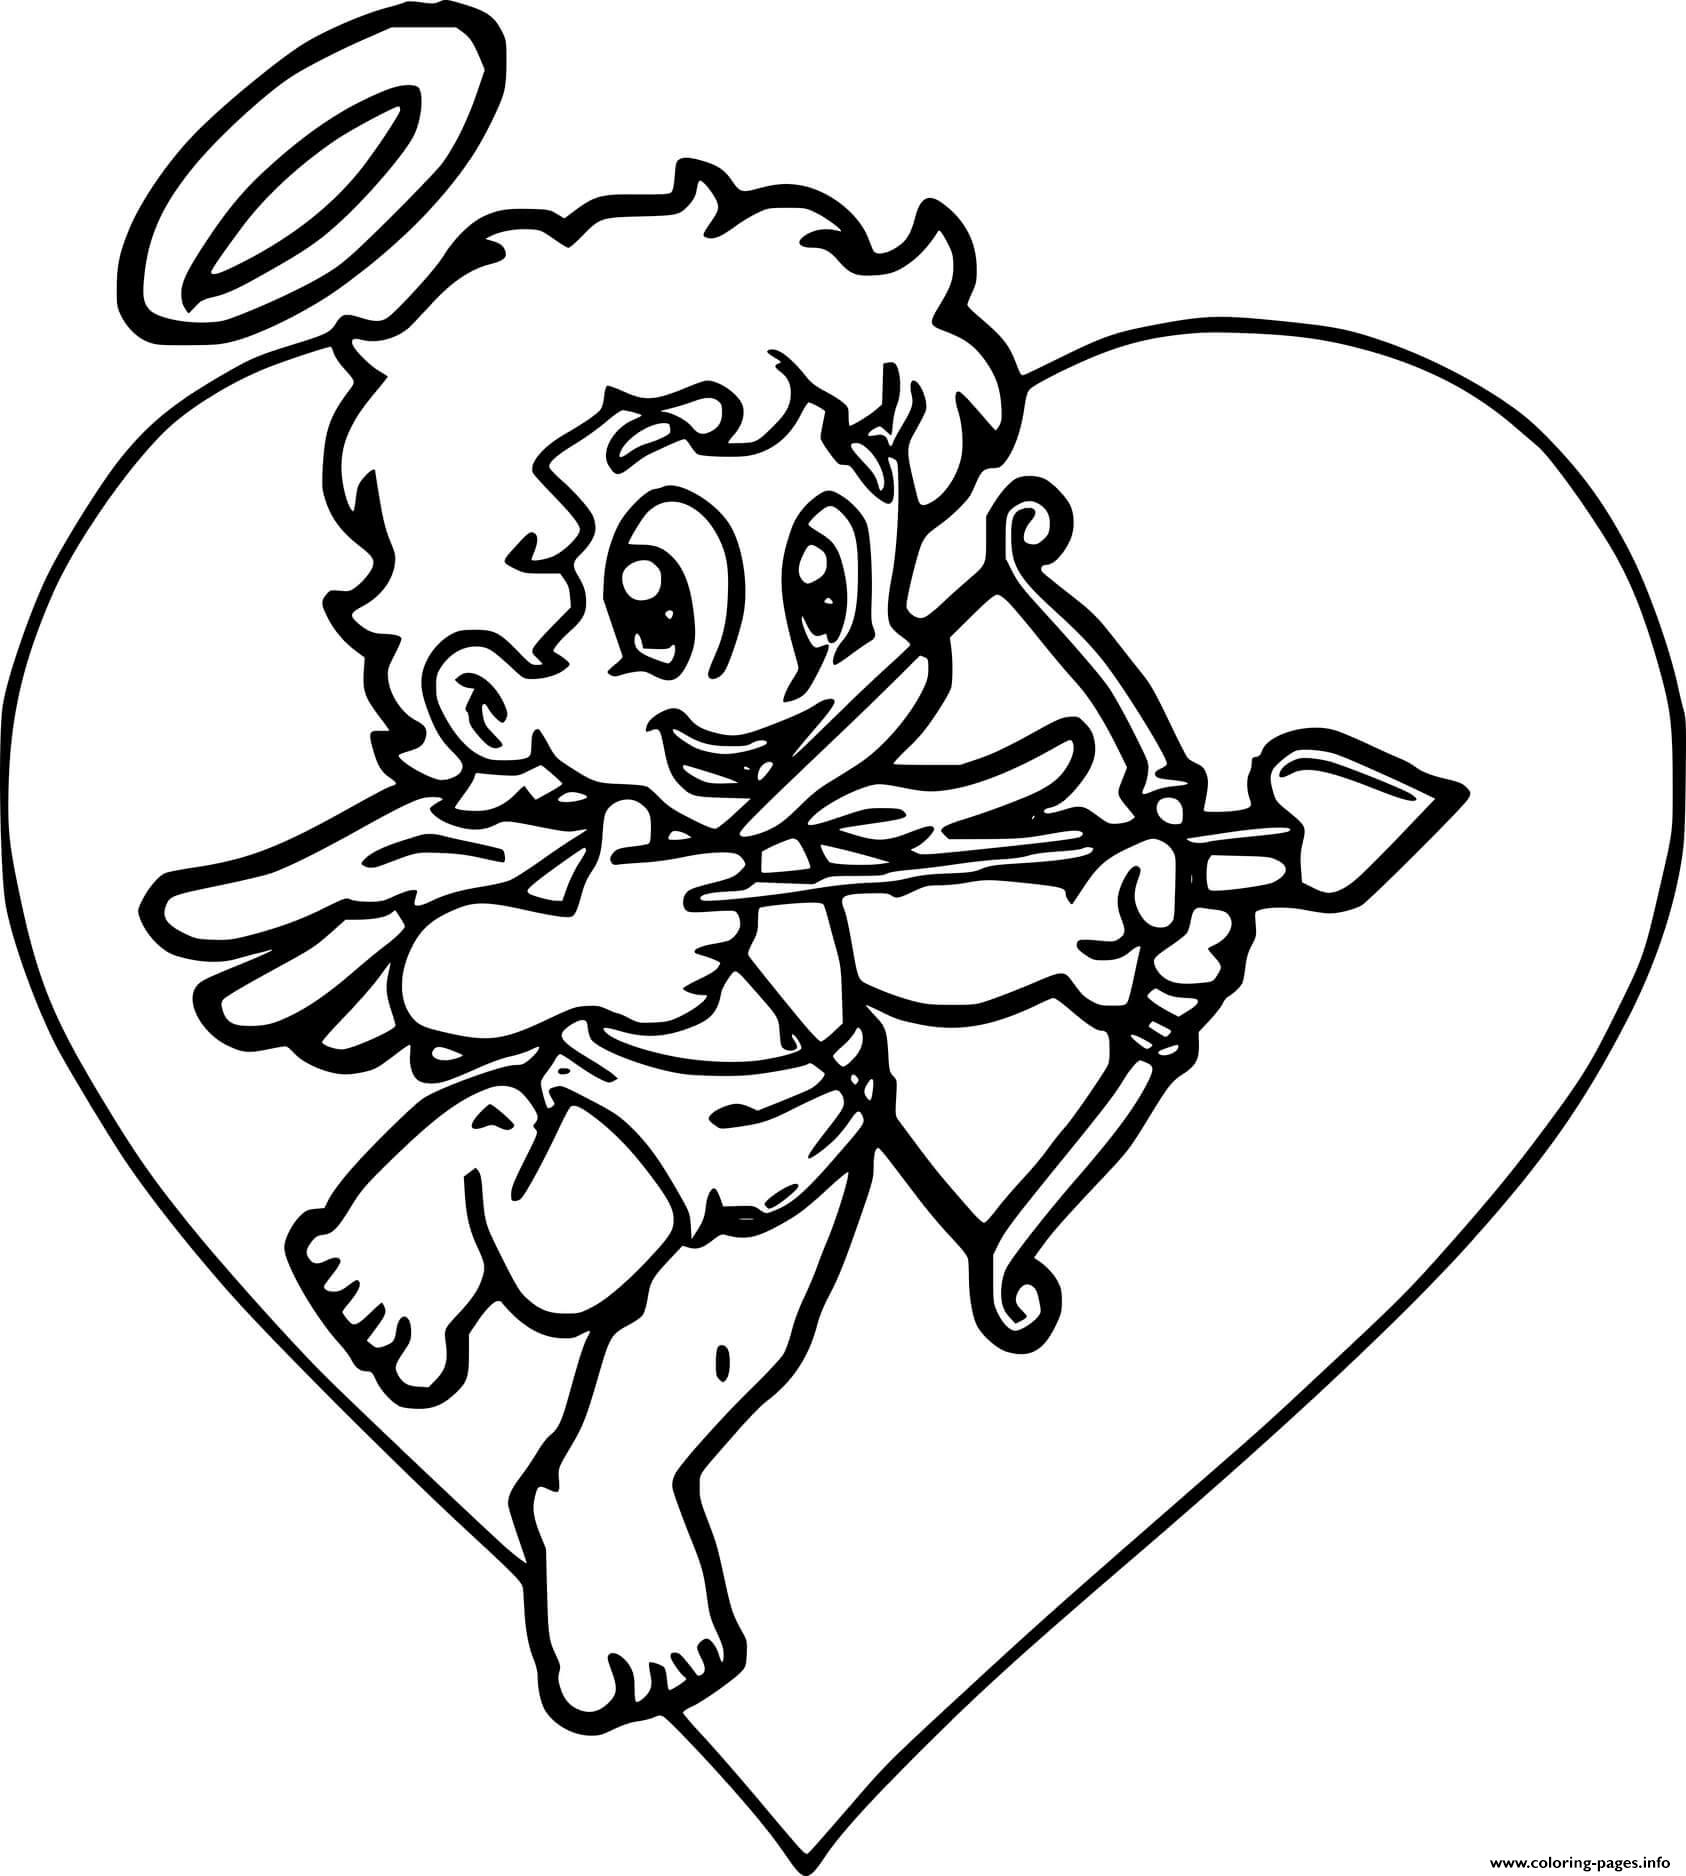 Baby Cupid coloring